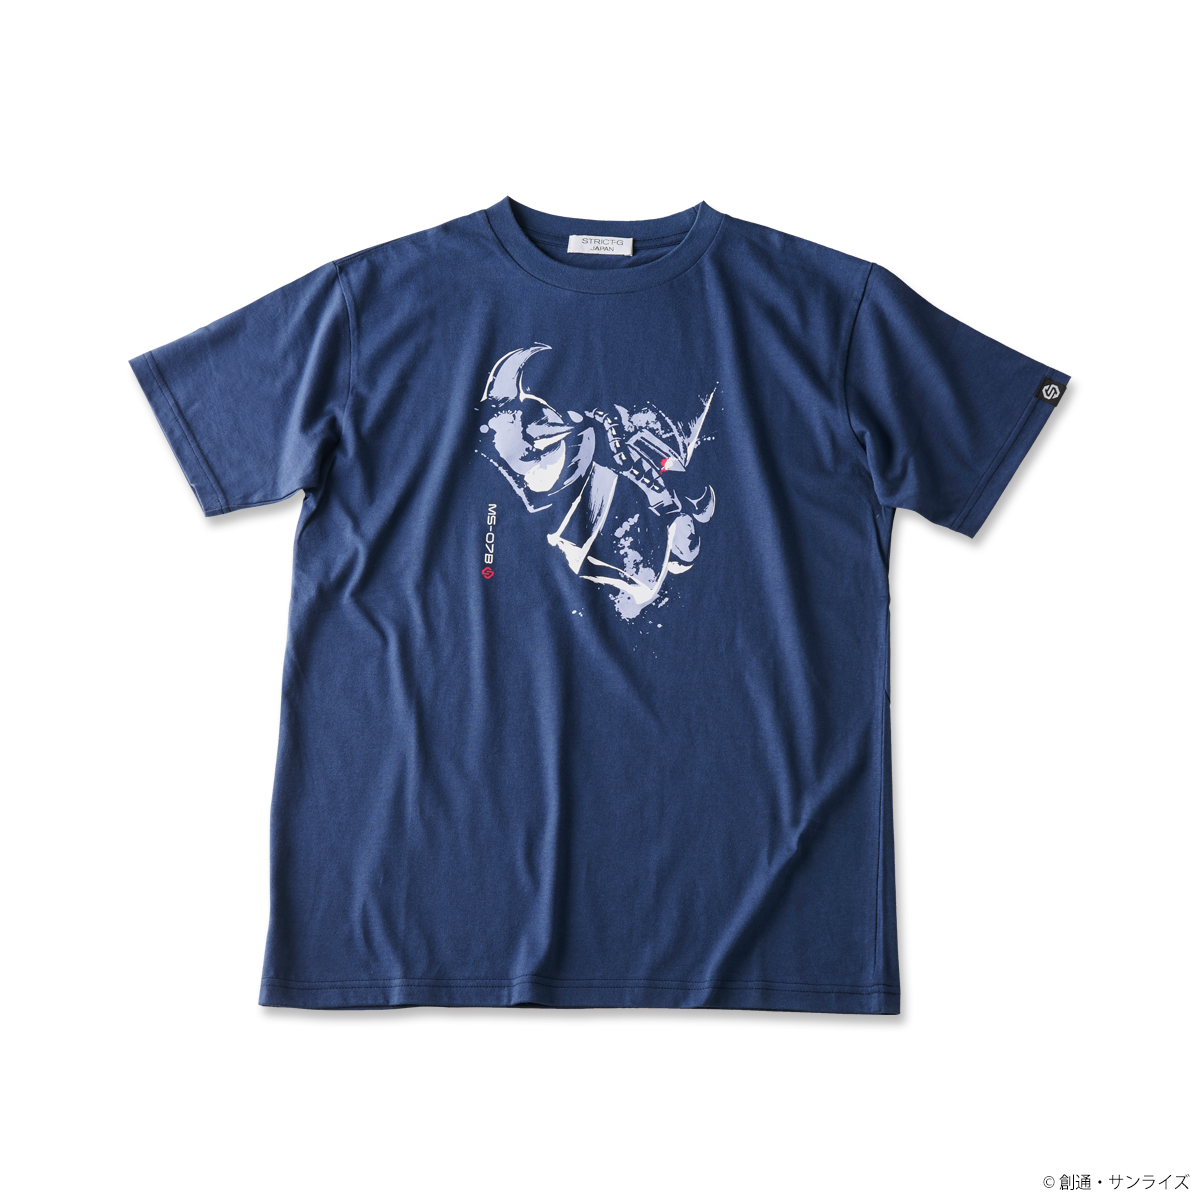 Gouf T-shirt—Mobile Suit Gundam/STRICT-G JAPAN Collaboration